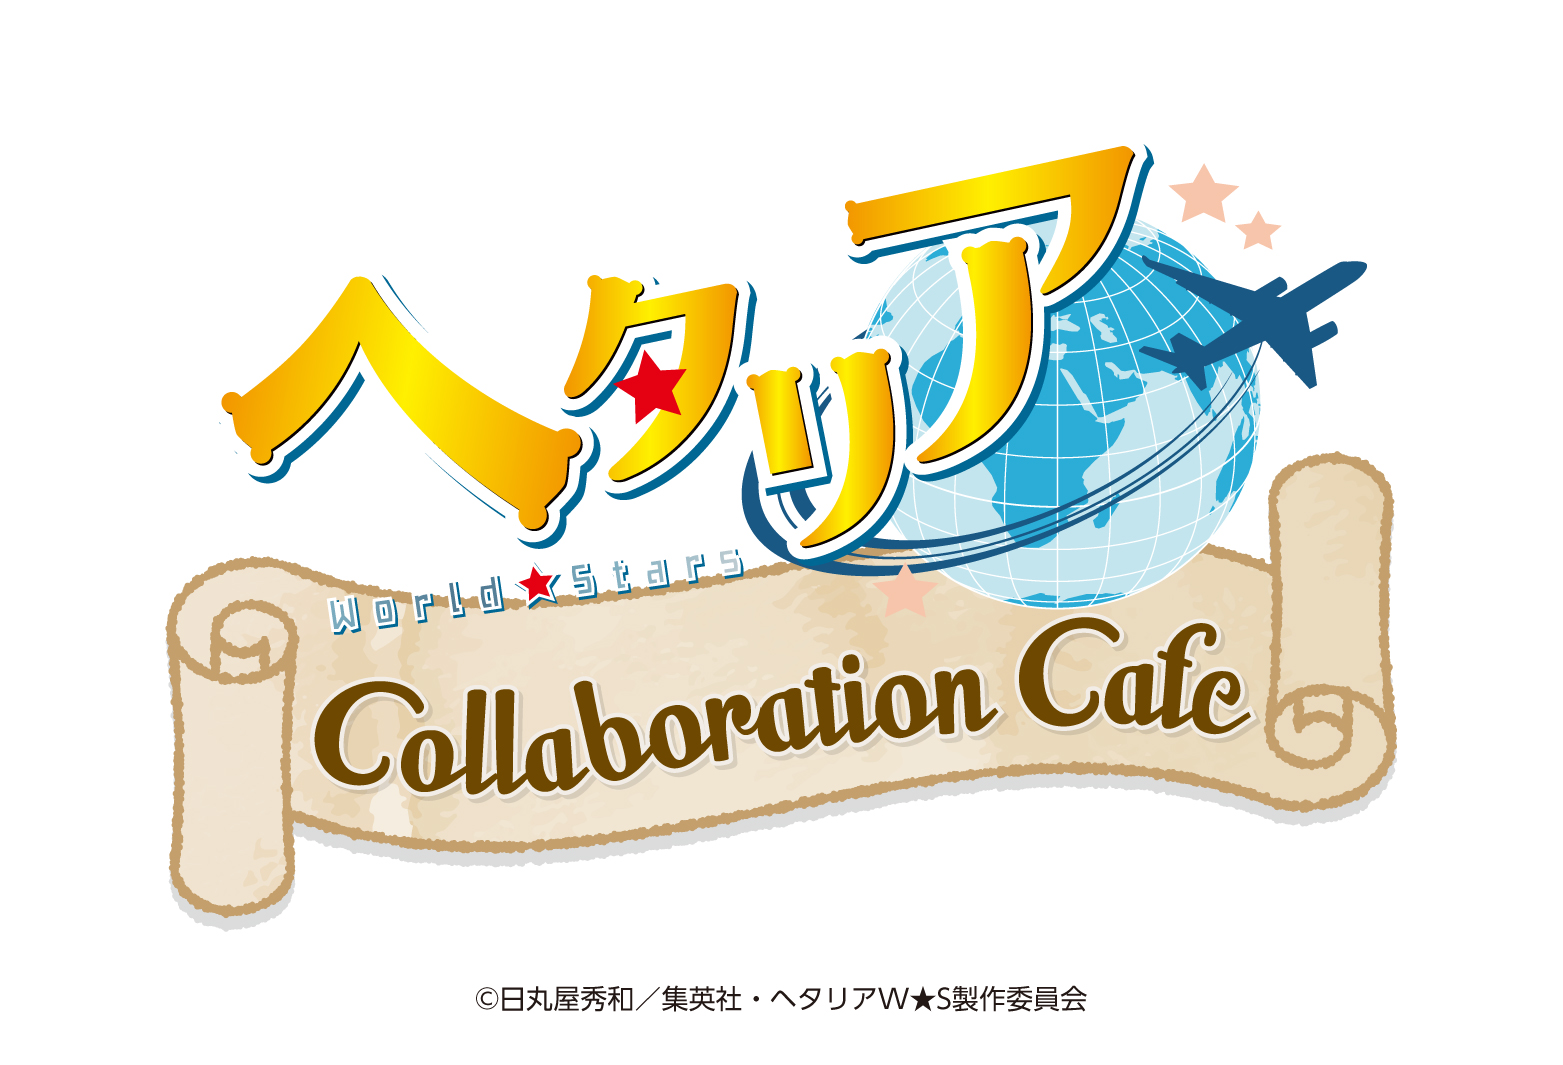 アニメ「ヘタリア World☆Stars」Collaboration Cafeの開催が決定